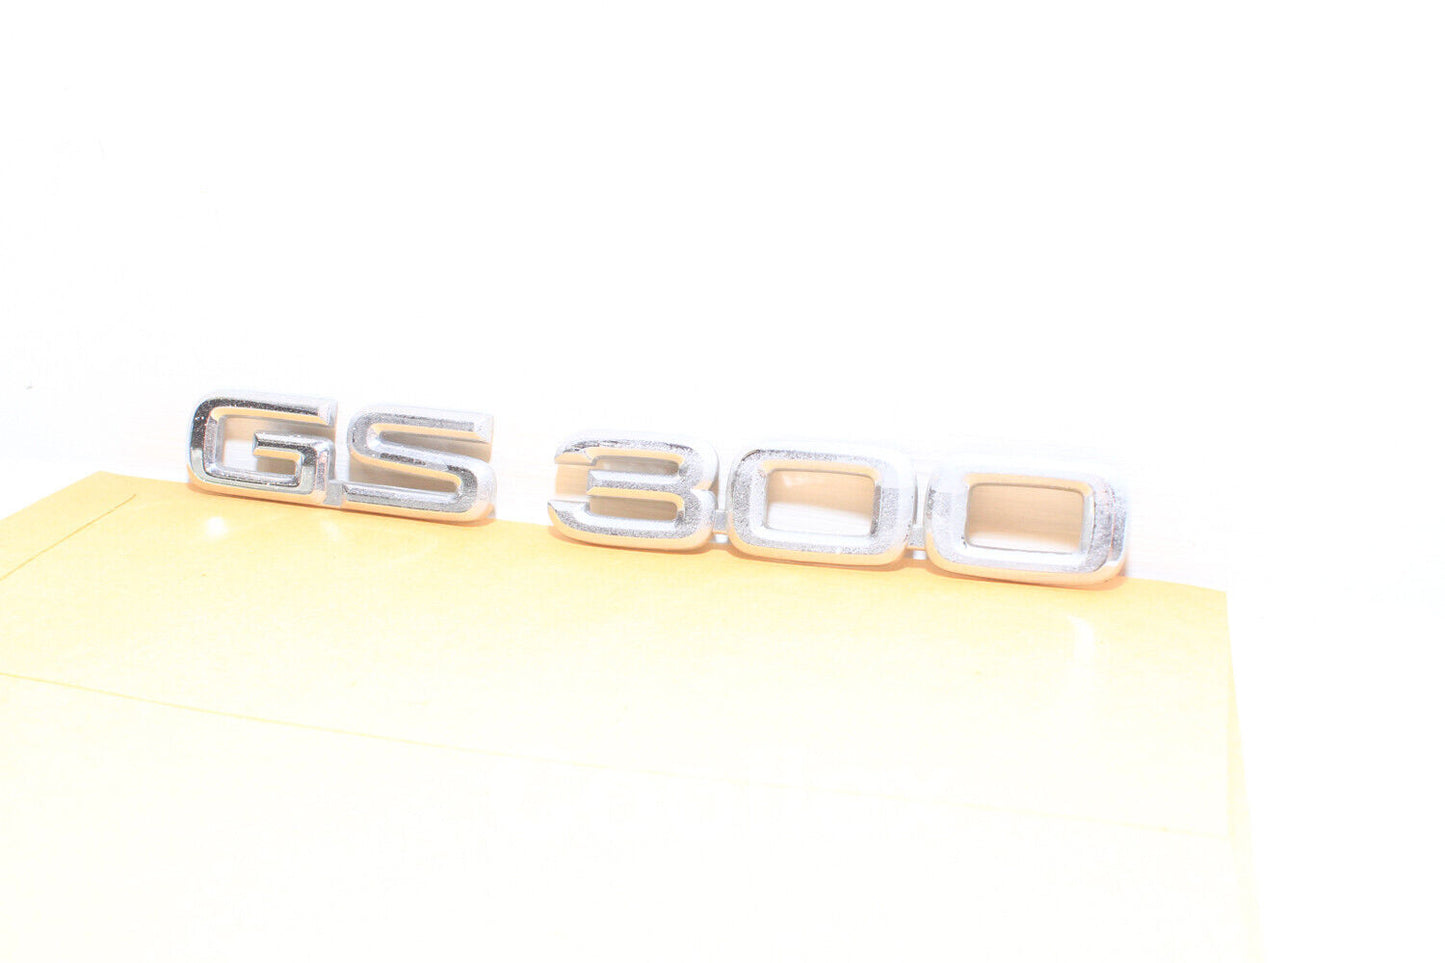 98-05 Lexus Gs300 Rear Trunk Emblem Logo 75443-30290, 75443-30300 OEM